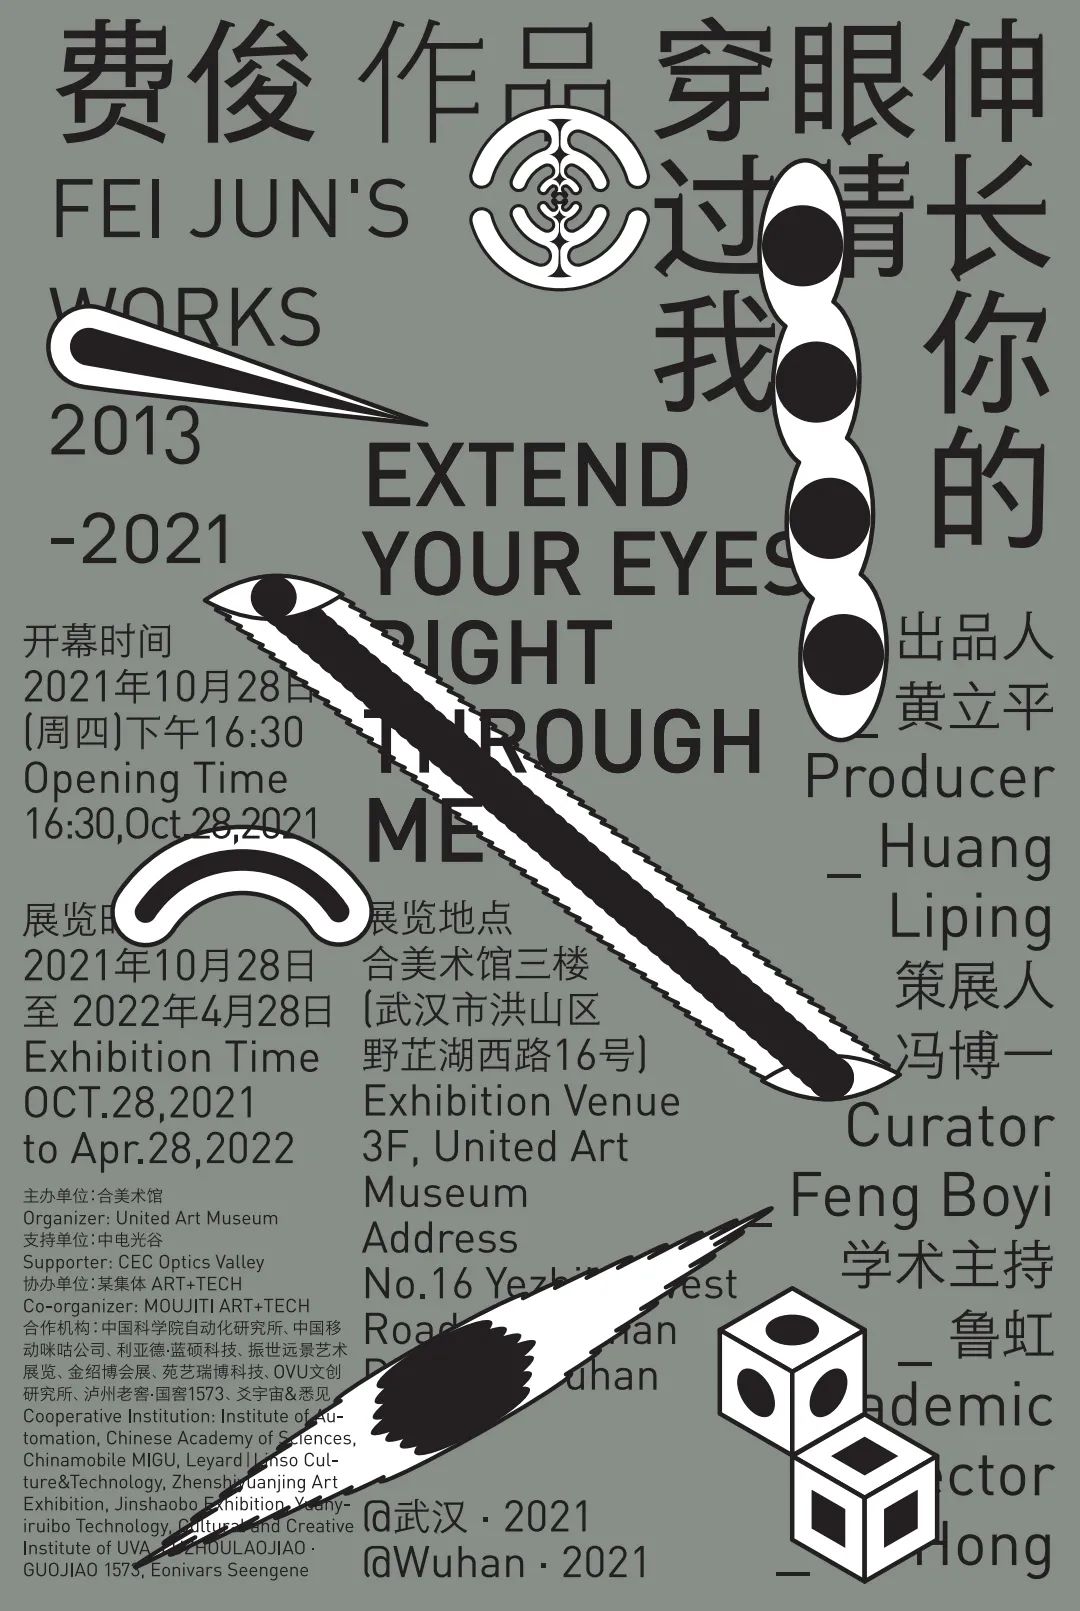 “伸长你的眼睛穿过我——费俊作品(2013—2021)”展览今日在武汉正式开展